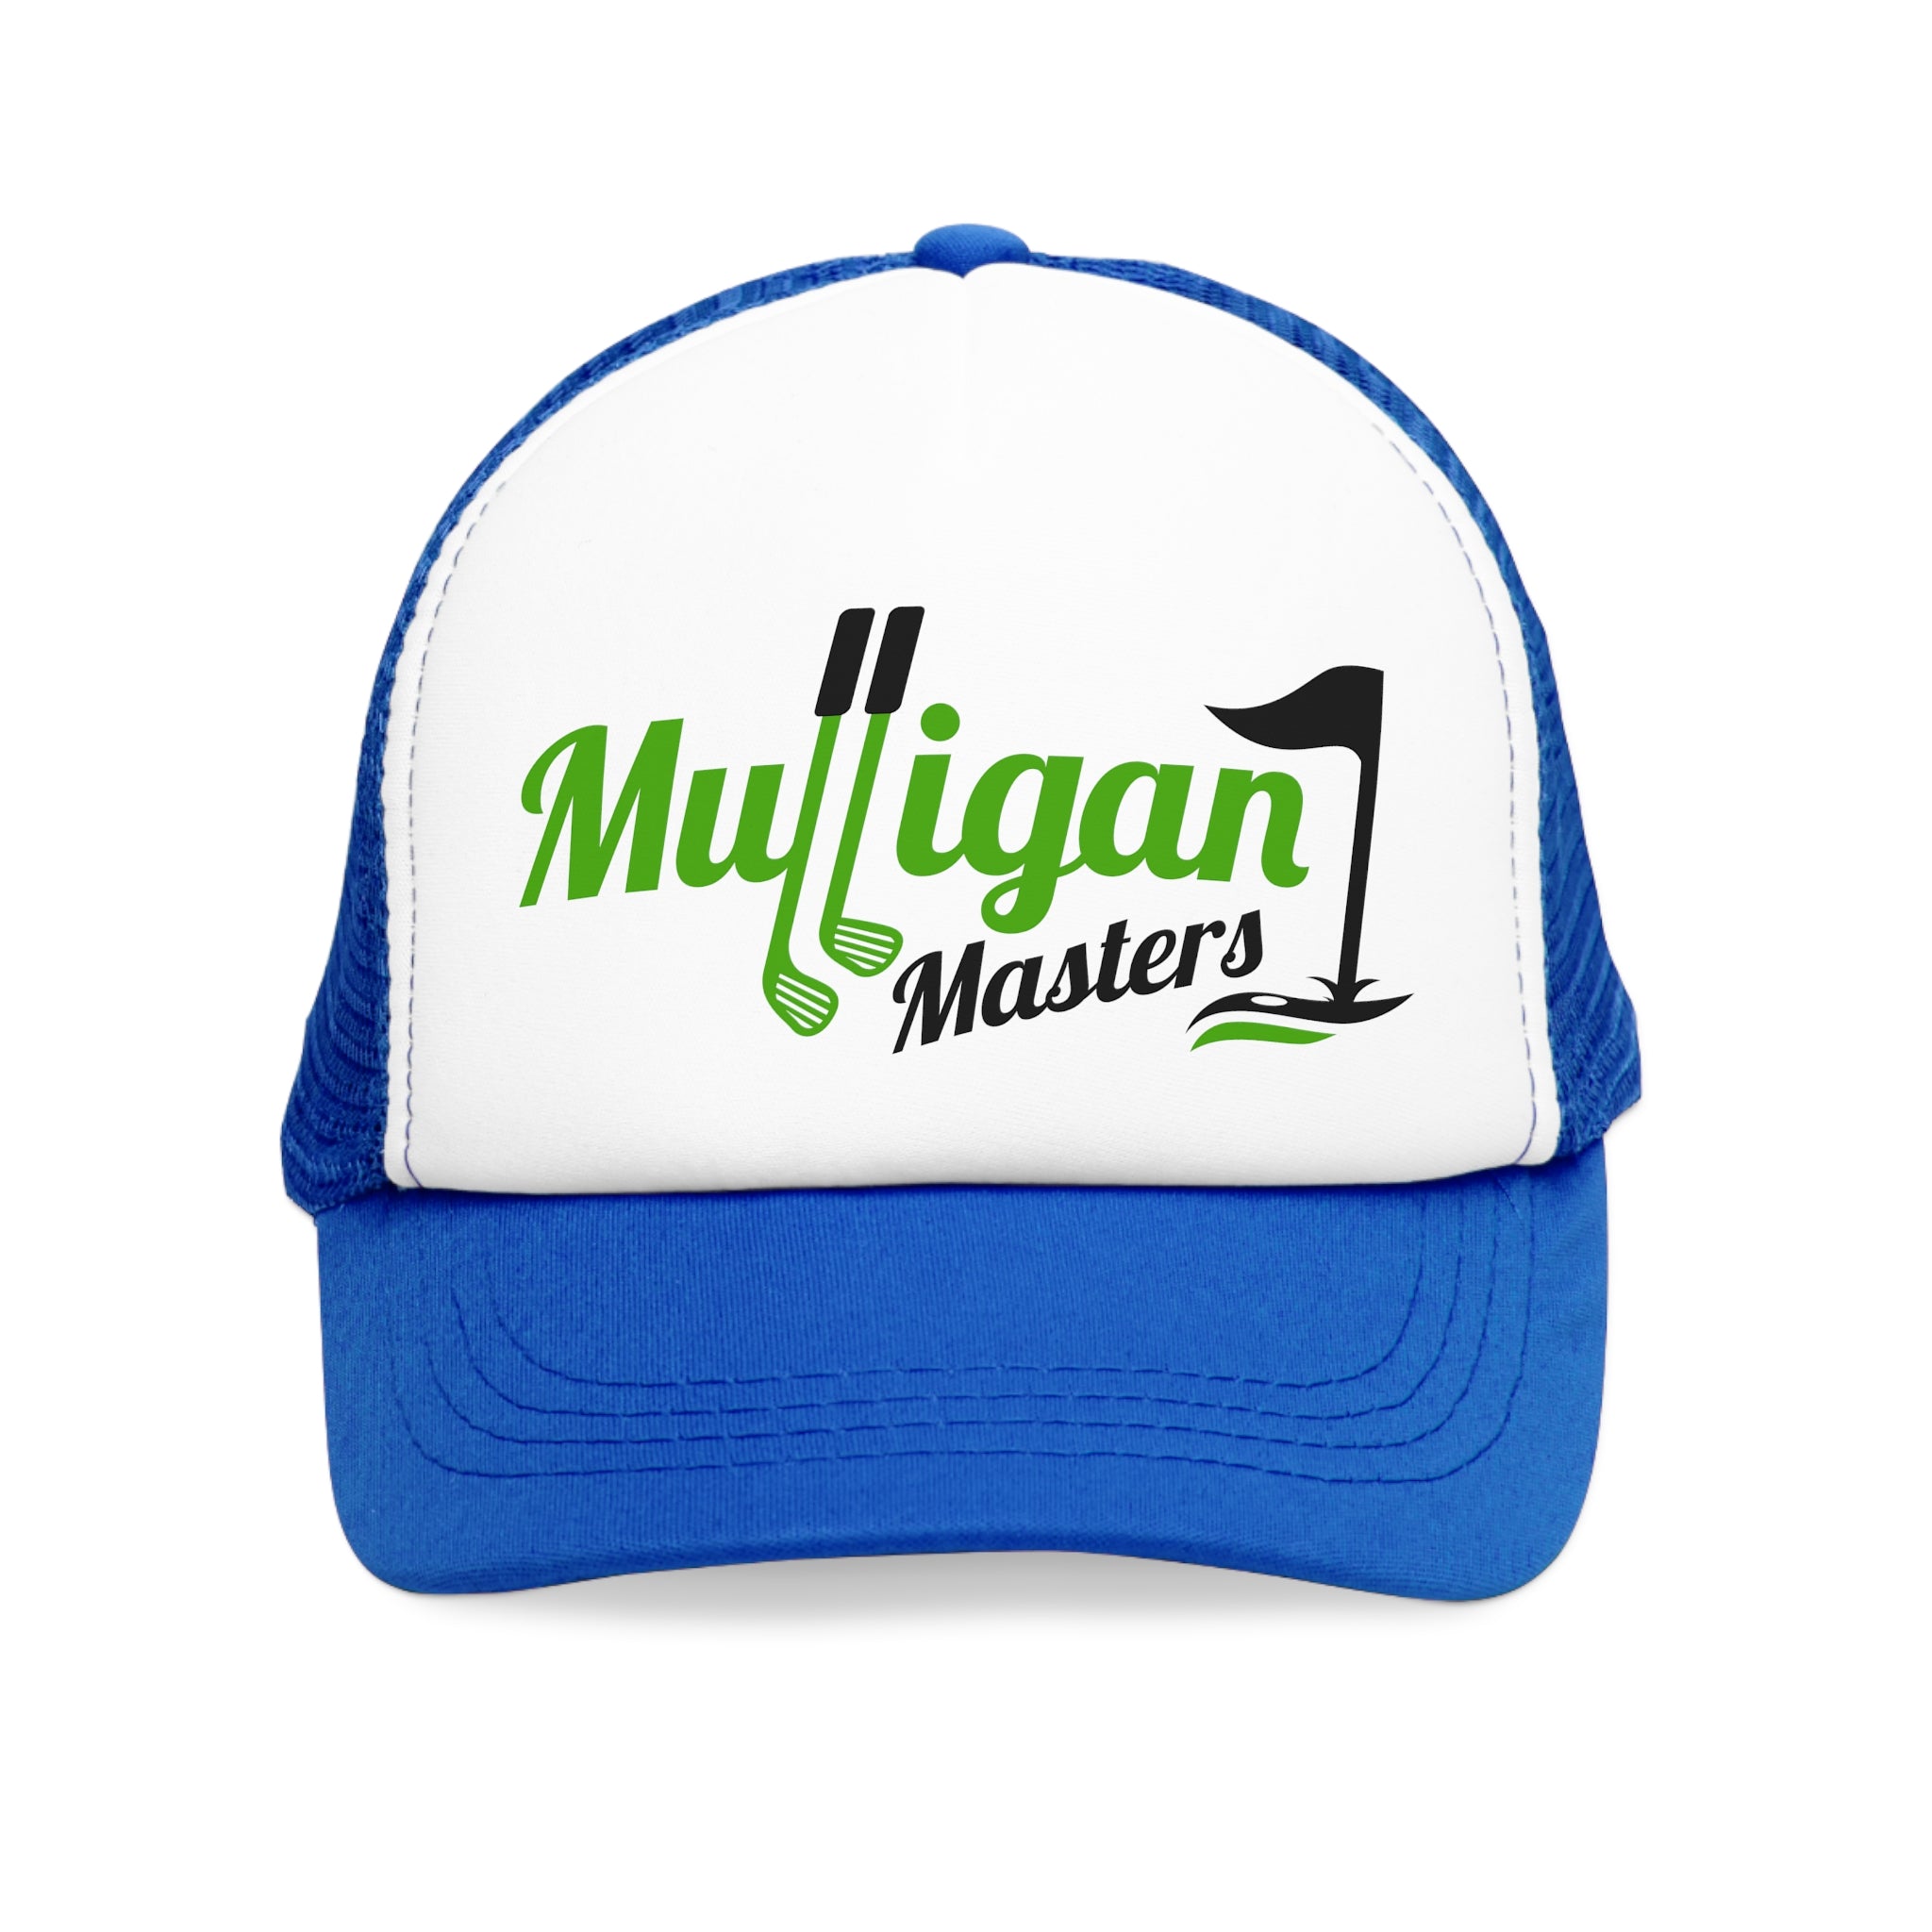 Mulligan Masters Cap